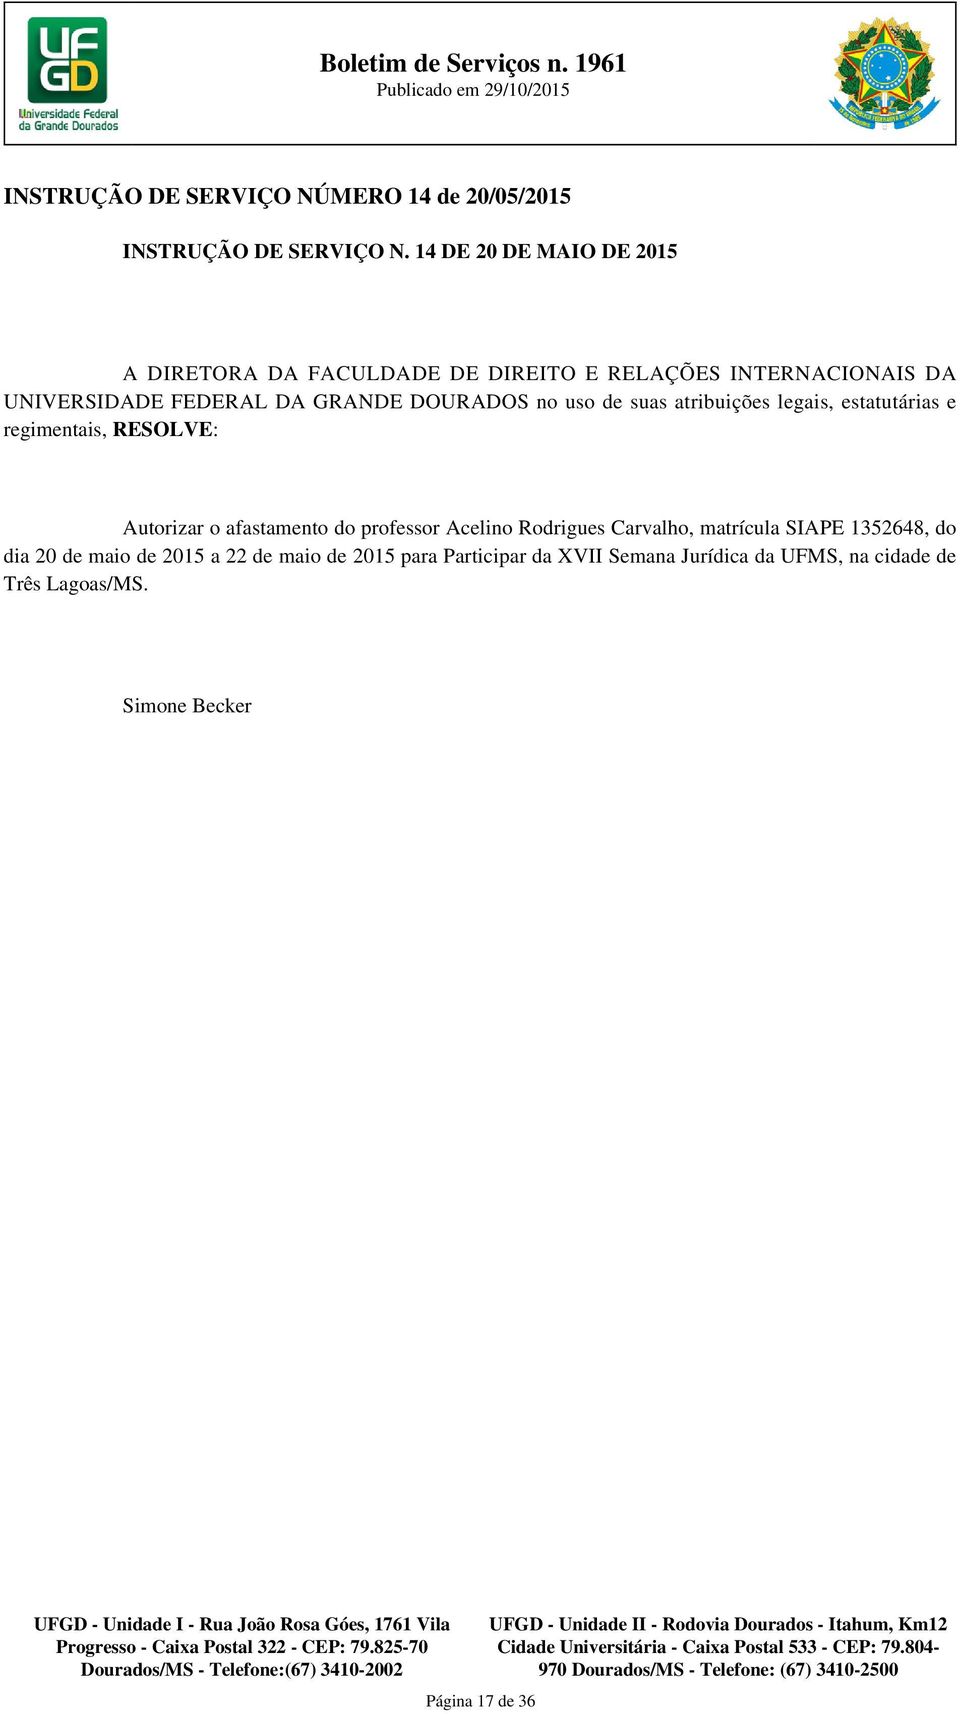 afastamento do professor Acelino Rodrigues Carvalho, matrícula SIAPE 1352648, do dia 20 de maio de